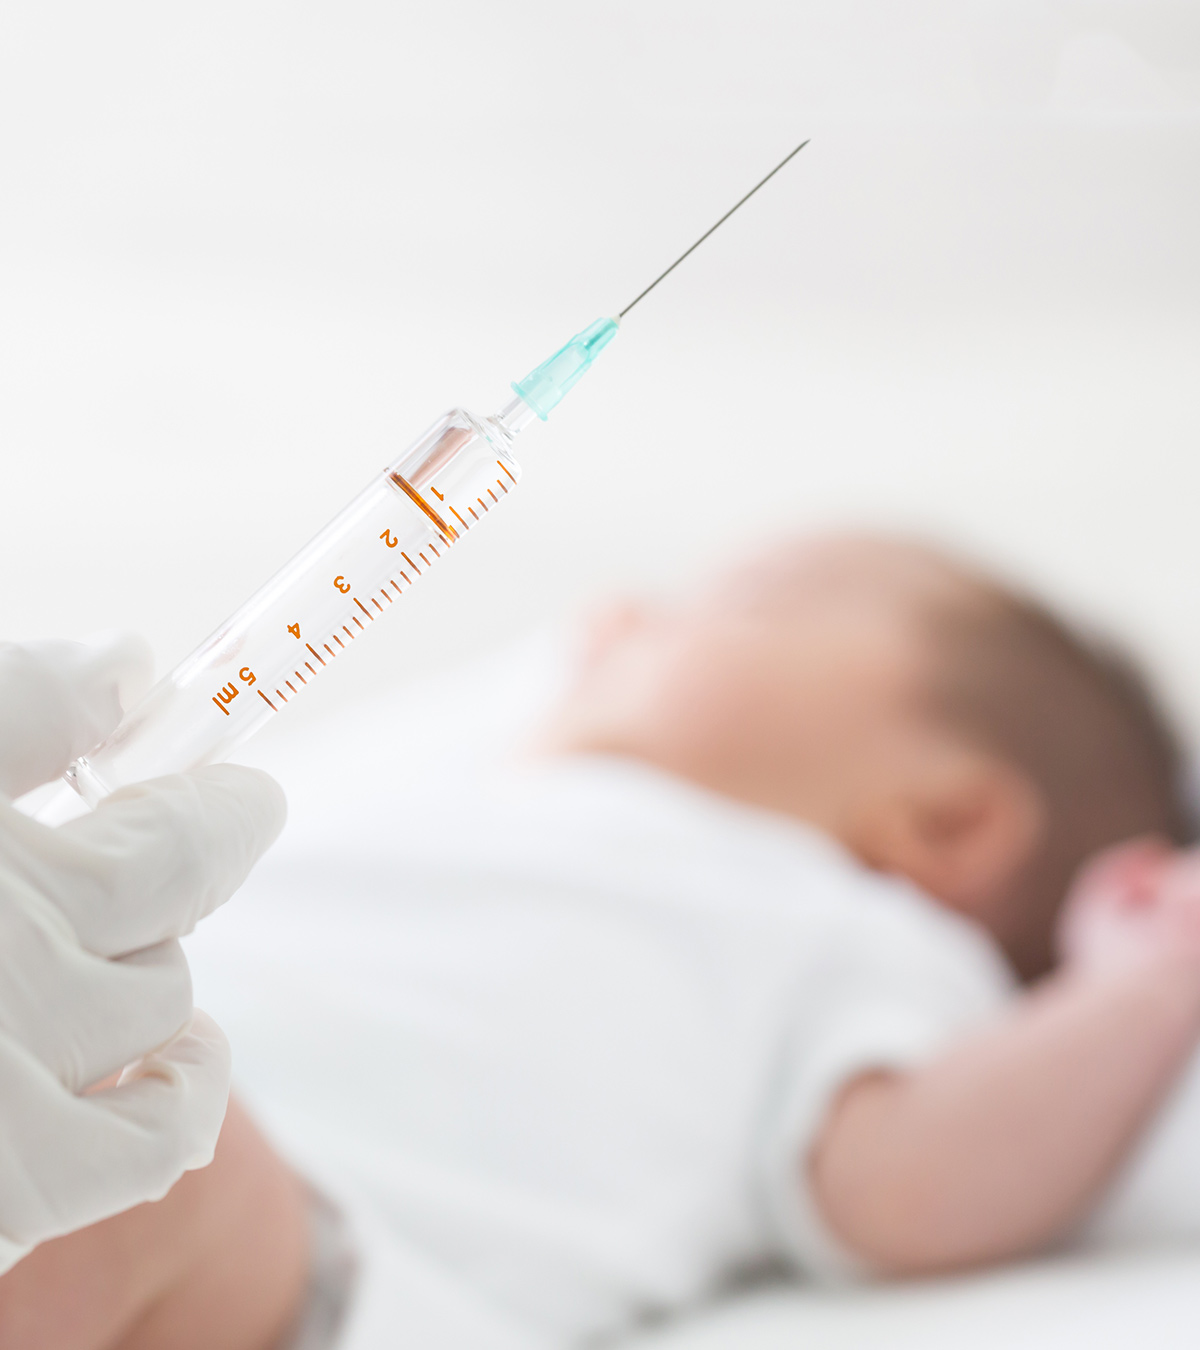 婴儿接种疫苗后发烧:正常吗?如何处理